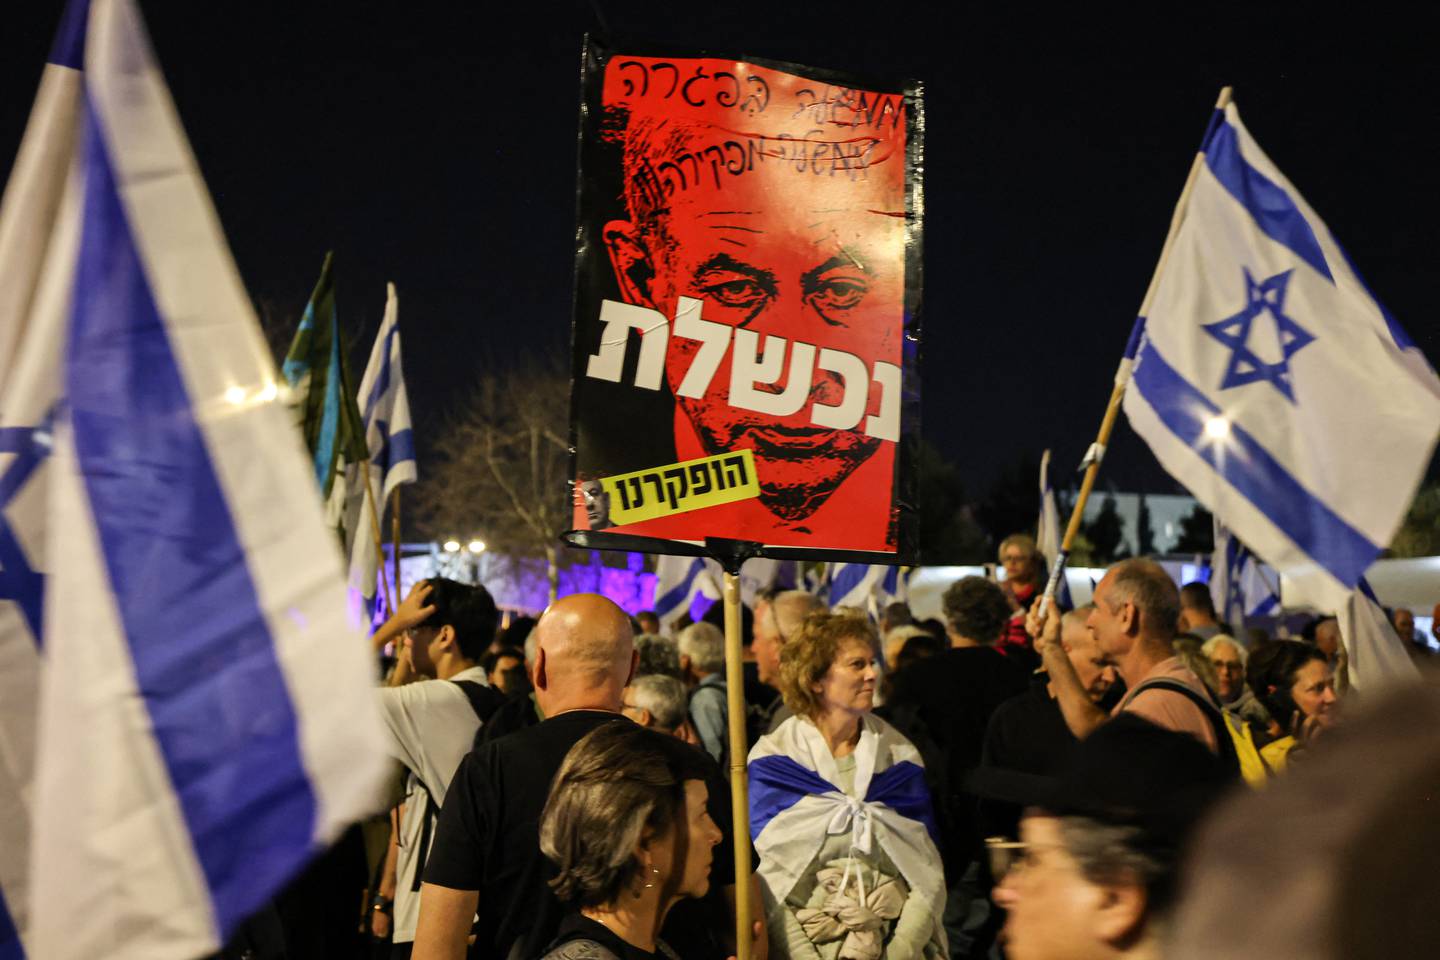 Los manifestantes sostienen carteles durante una protesta contra el gobierno israelí y para exigir la liberación segura de los rehenes retenidos por el movimiento palestino Hamas en la Franja de Gaza.